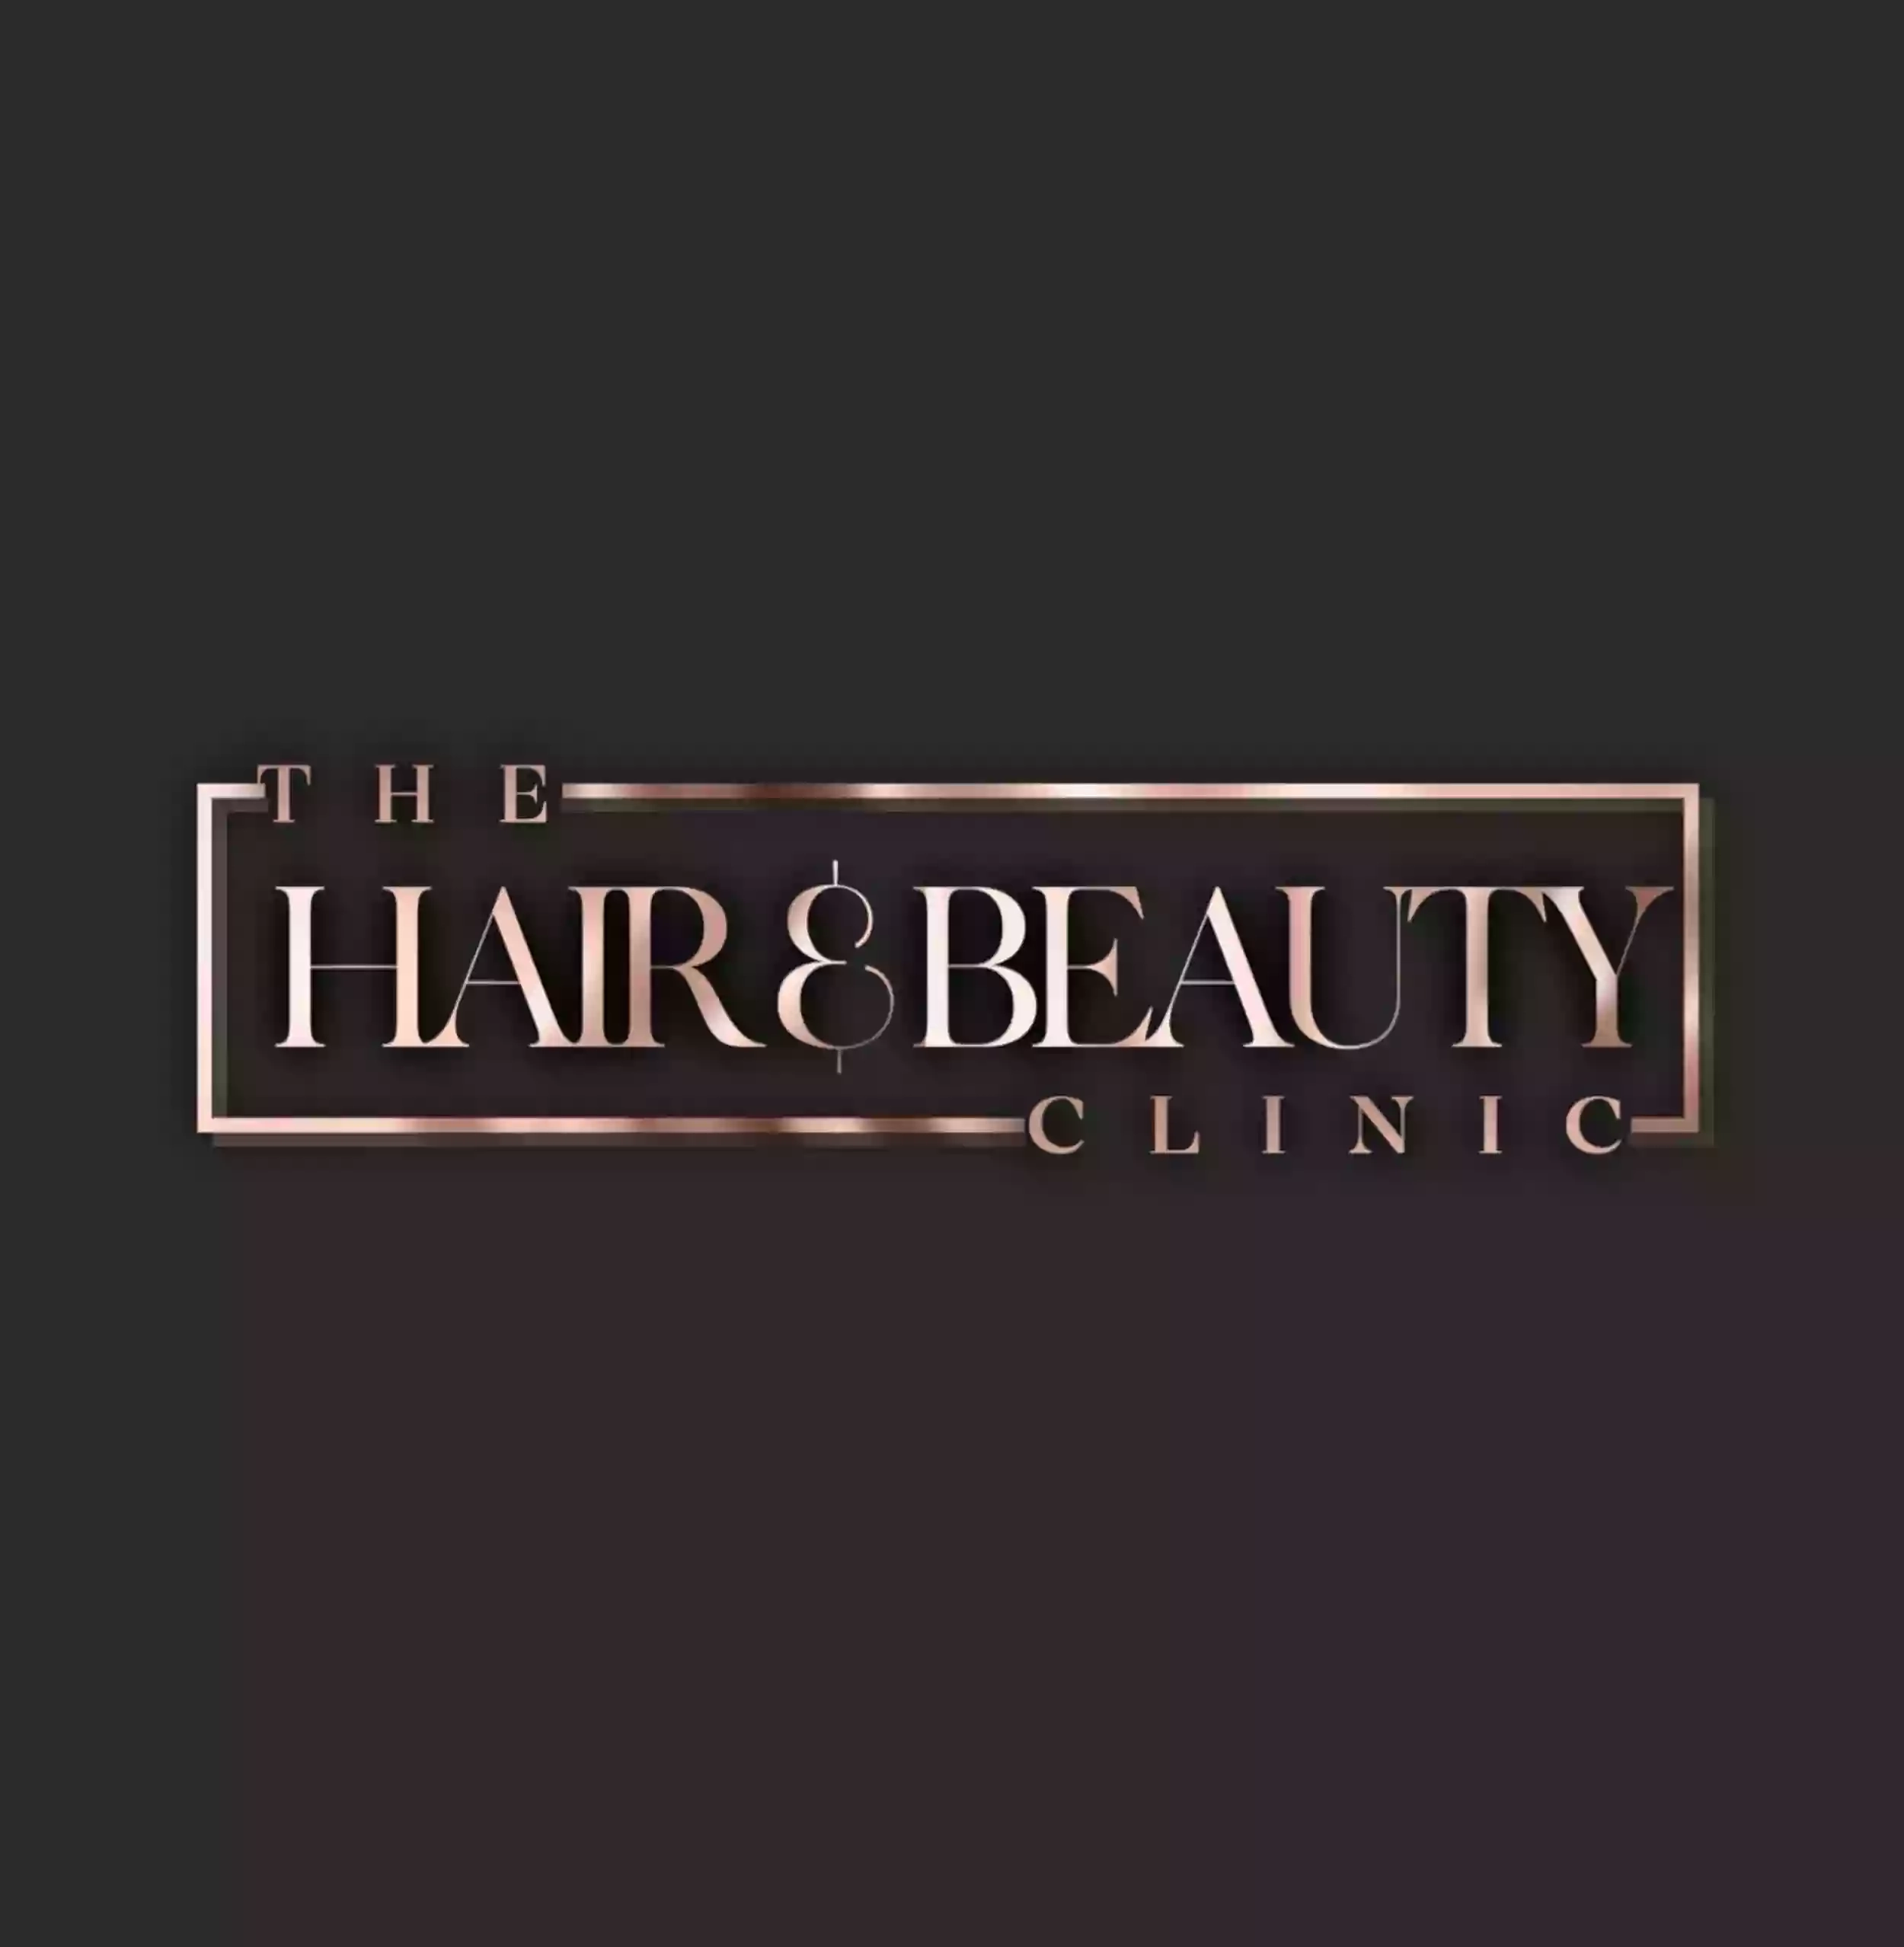 The Hair & Beauty Clinic